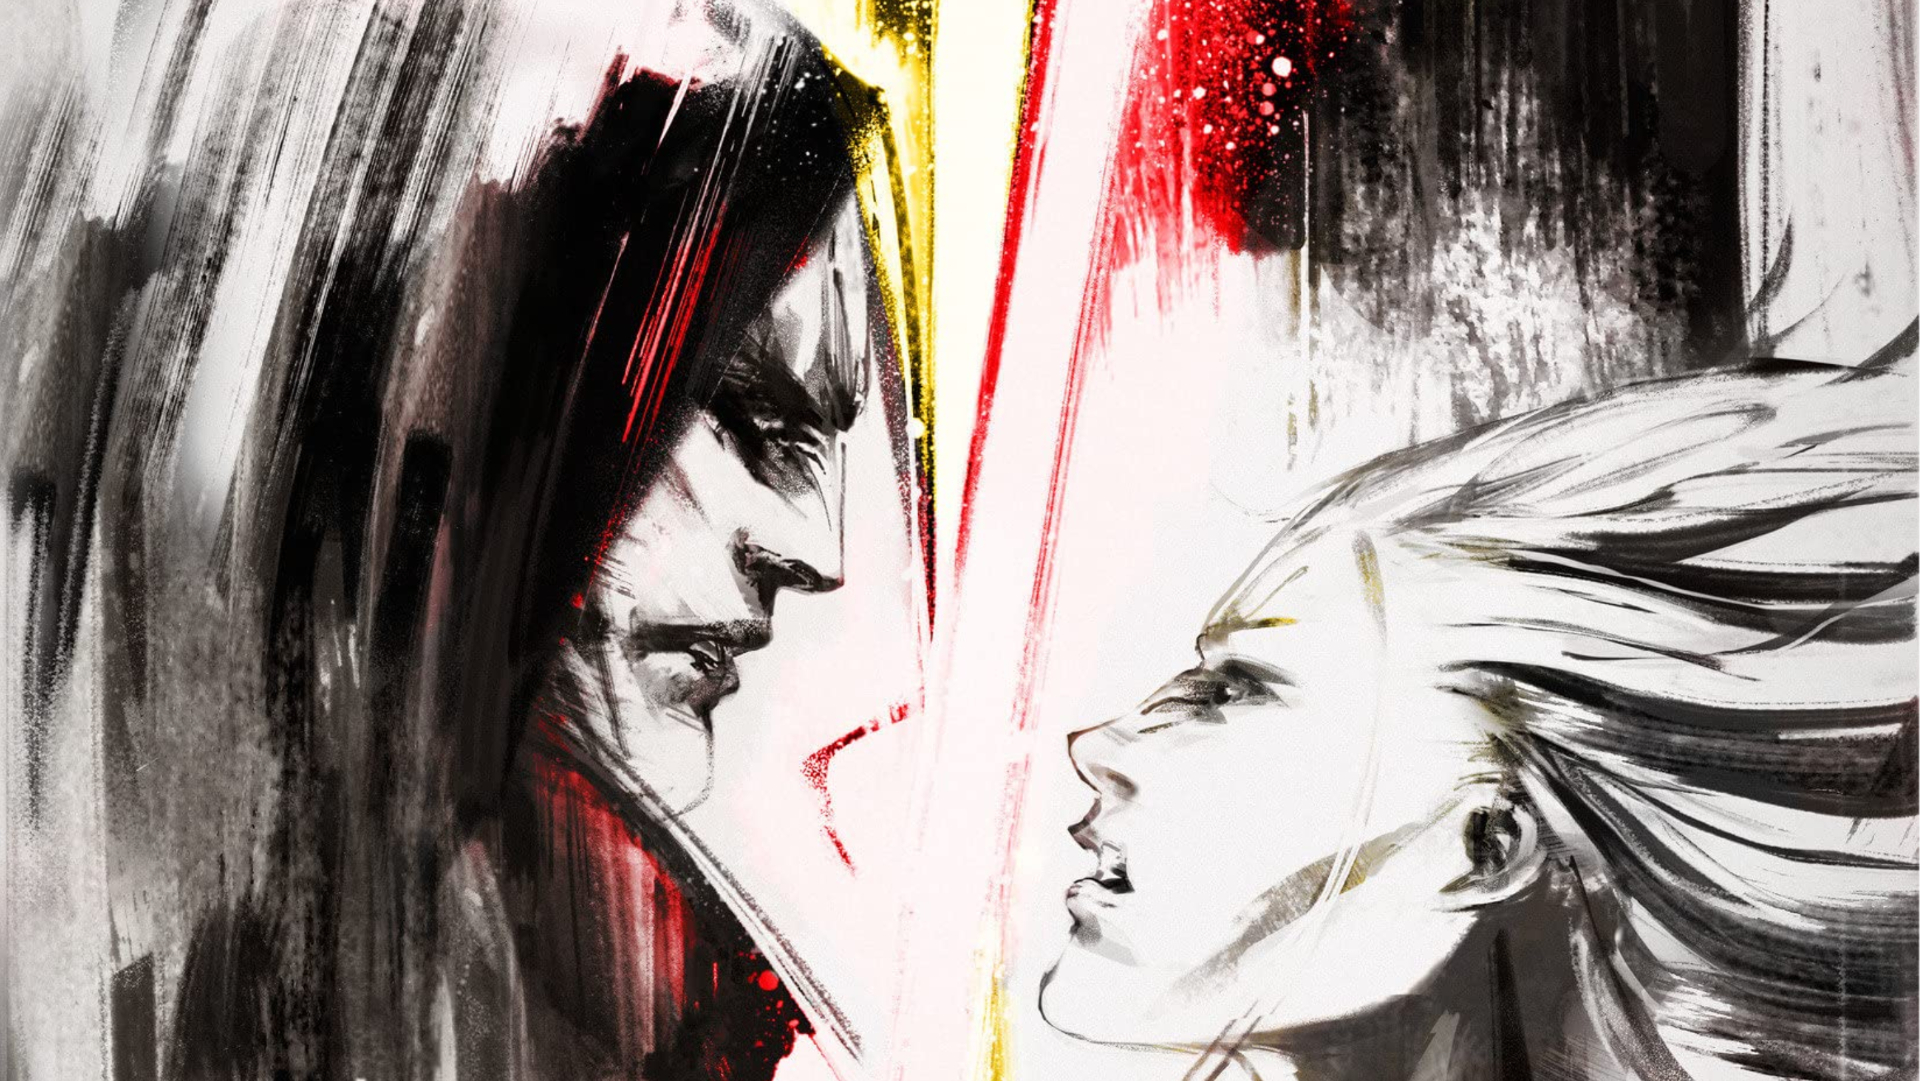 Darth Bane brigando com seu aprendiz Darth Zannah na arte da capa do romance Path of Destruction de Drew Karpyshyn.